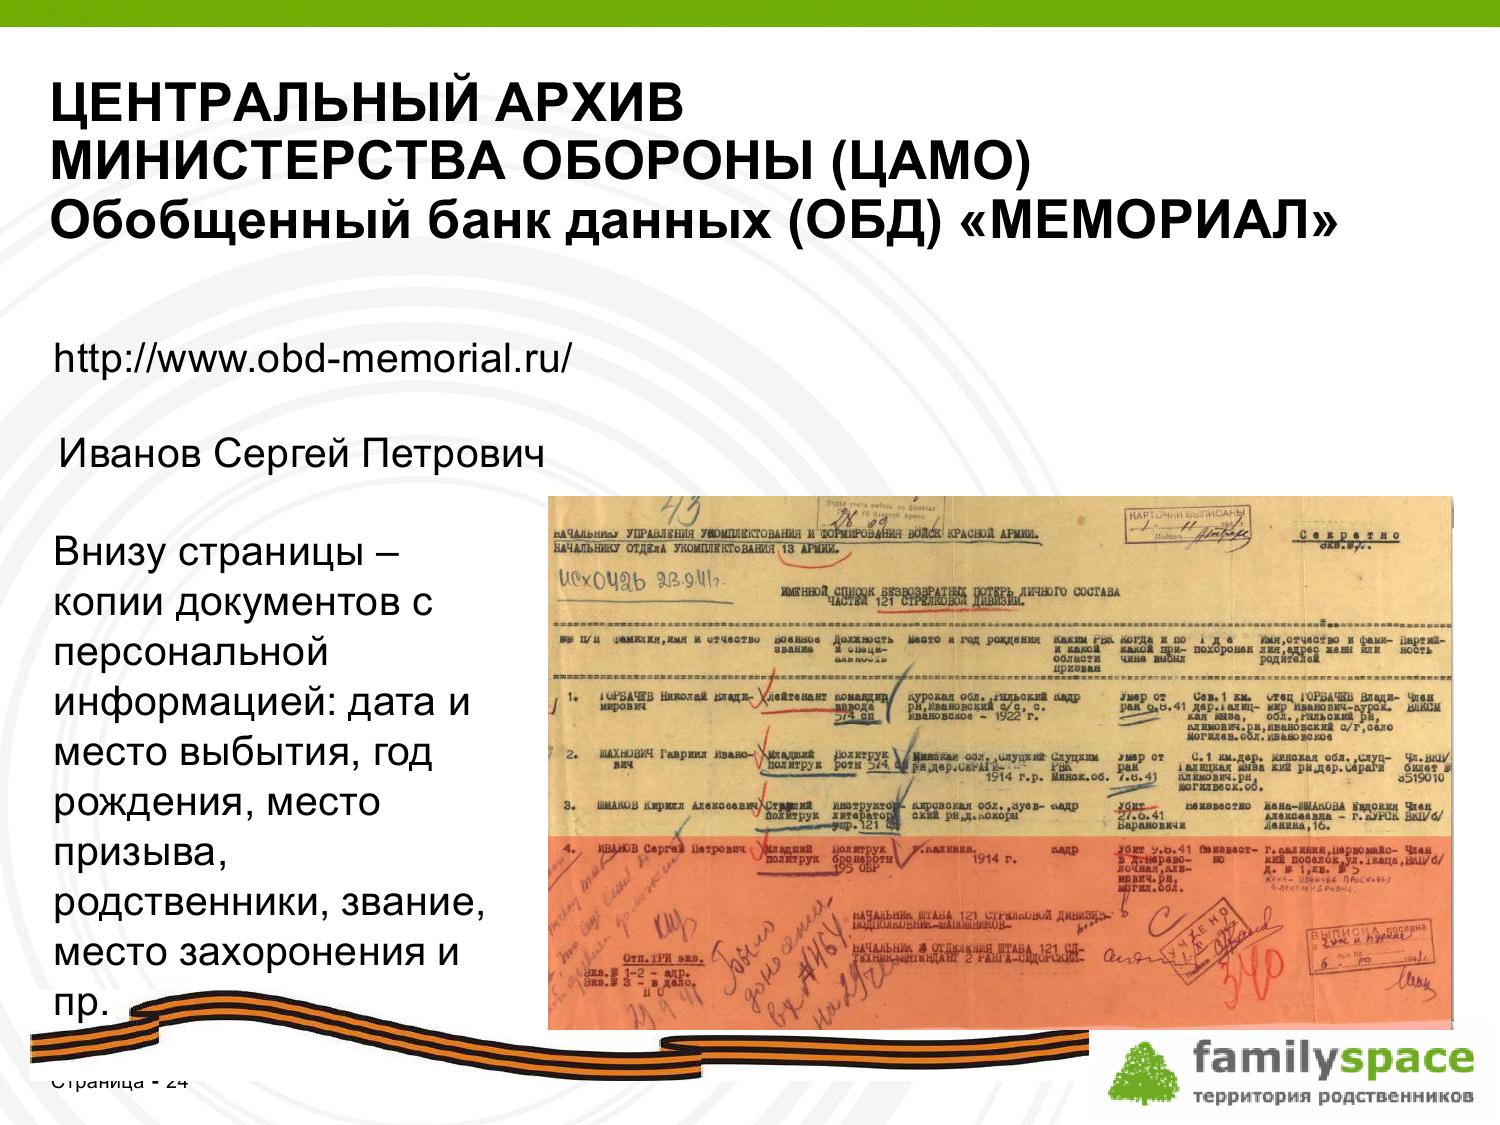 Обобщенный банк данных (ОБД) "Мемориал"